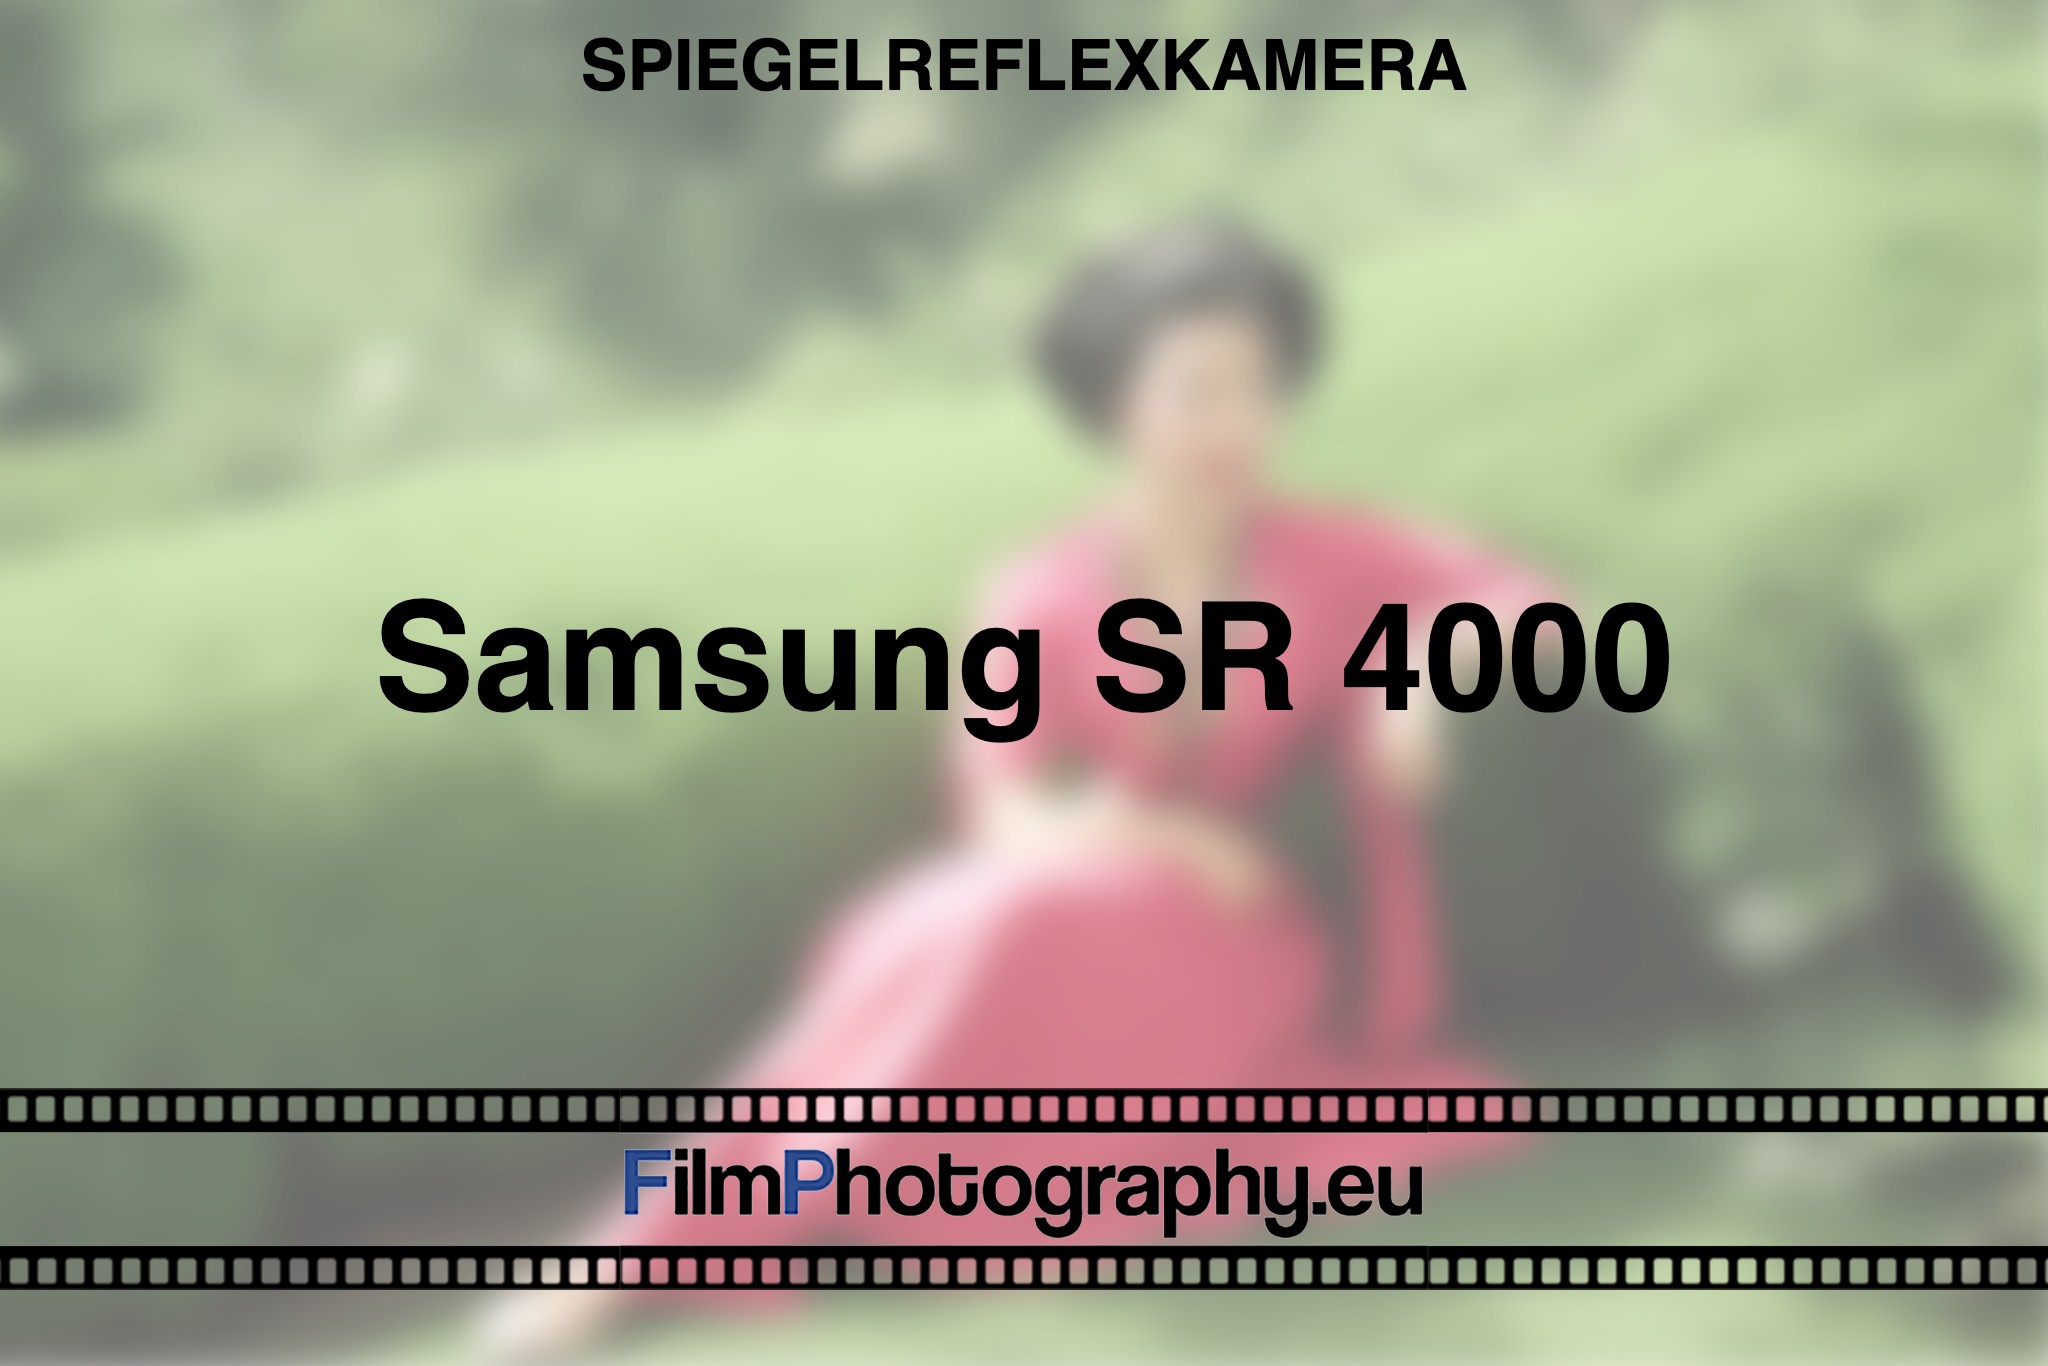 samsung-sr-4000-spiegelreflexkamera-bnv